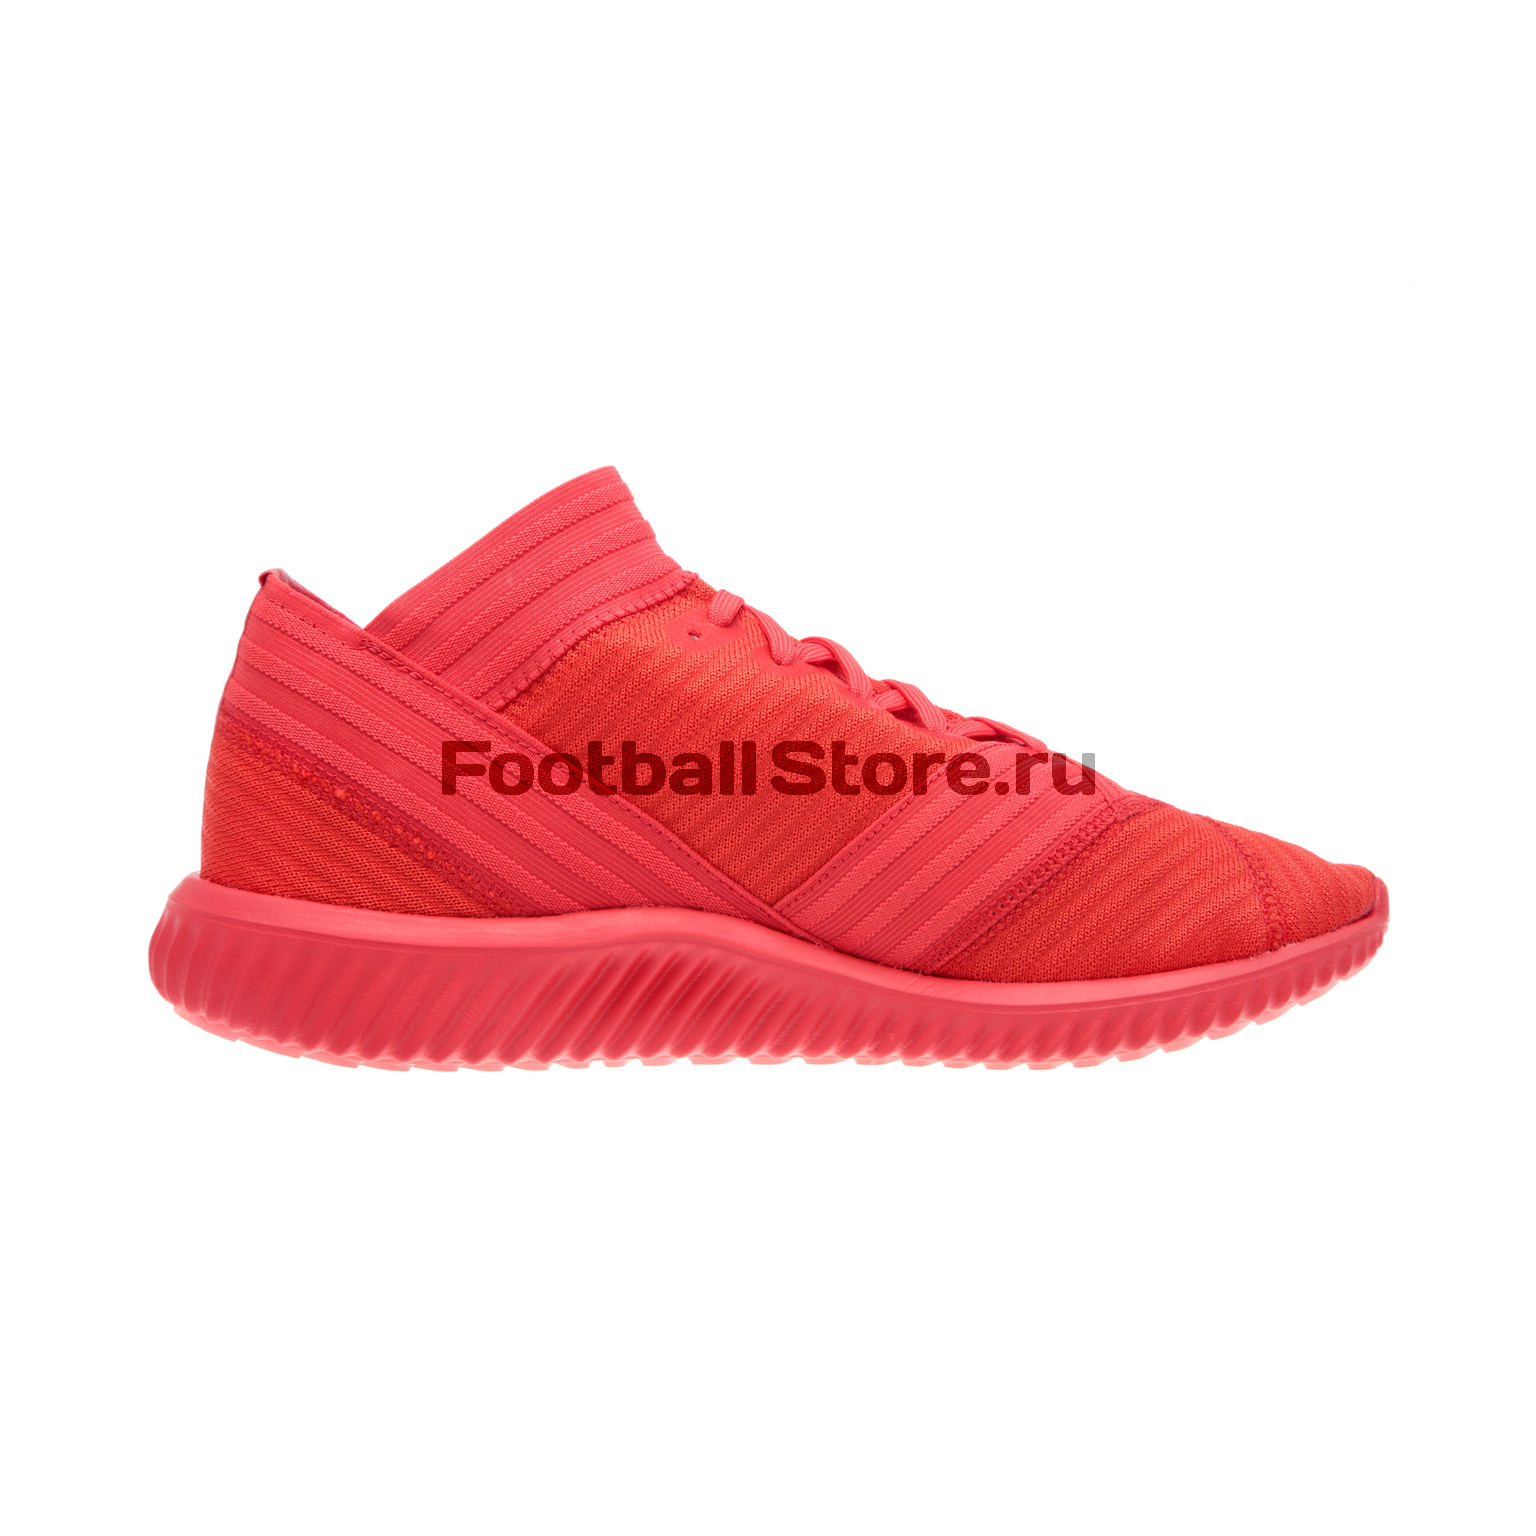 Футбольная обувь Adidas Nemeziz Tango 17.1 TR CP9116